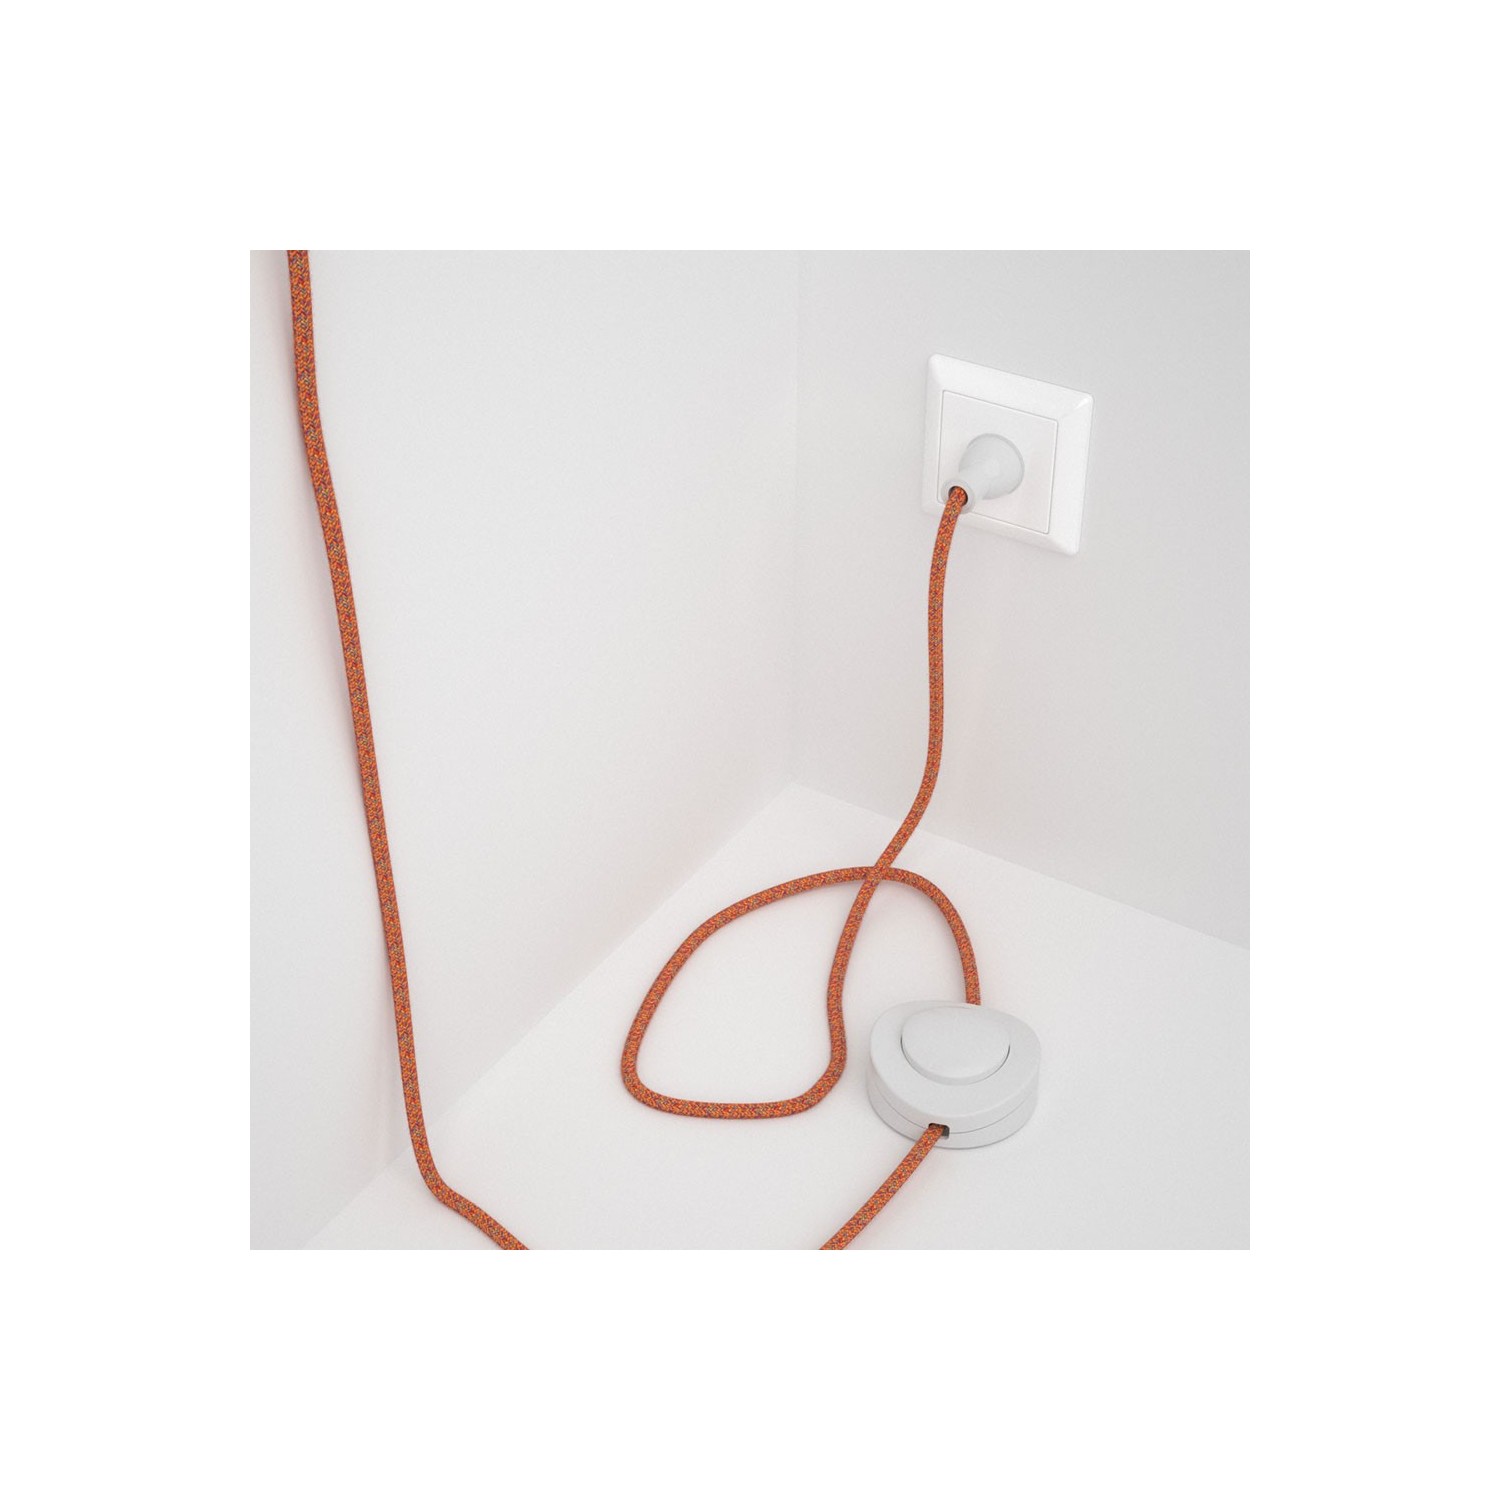 Cableado para lámpara de piso, cable RX07 Algodón Indian Summer 3 m. Elige tu el color de la clavija y del interruptor!